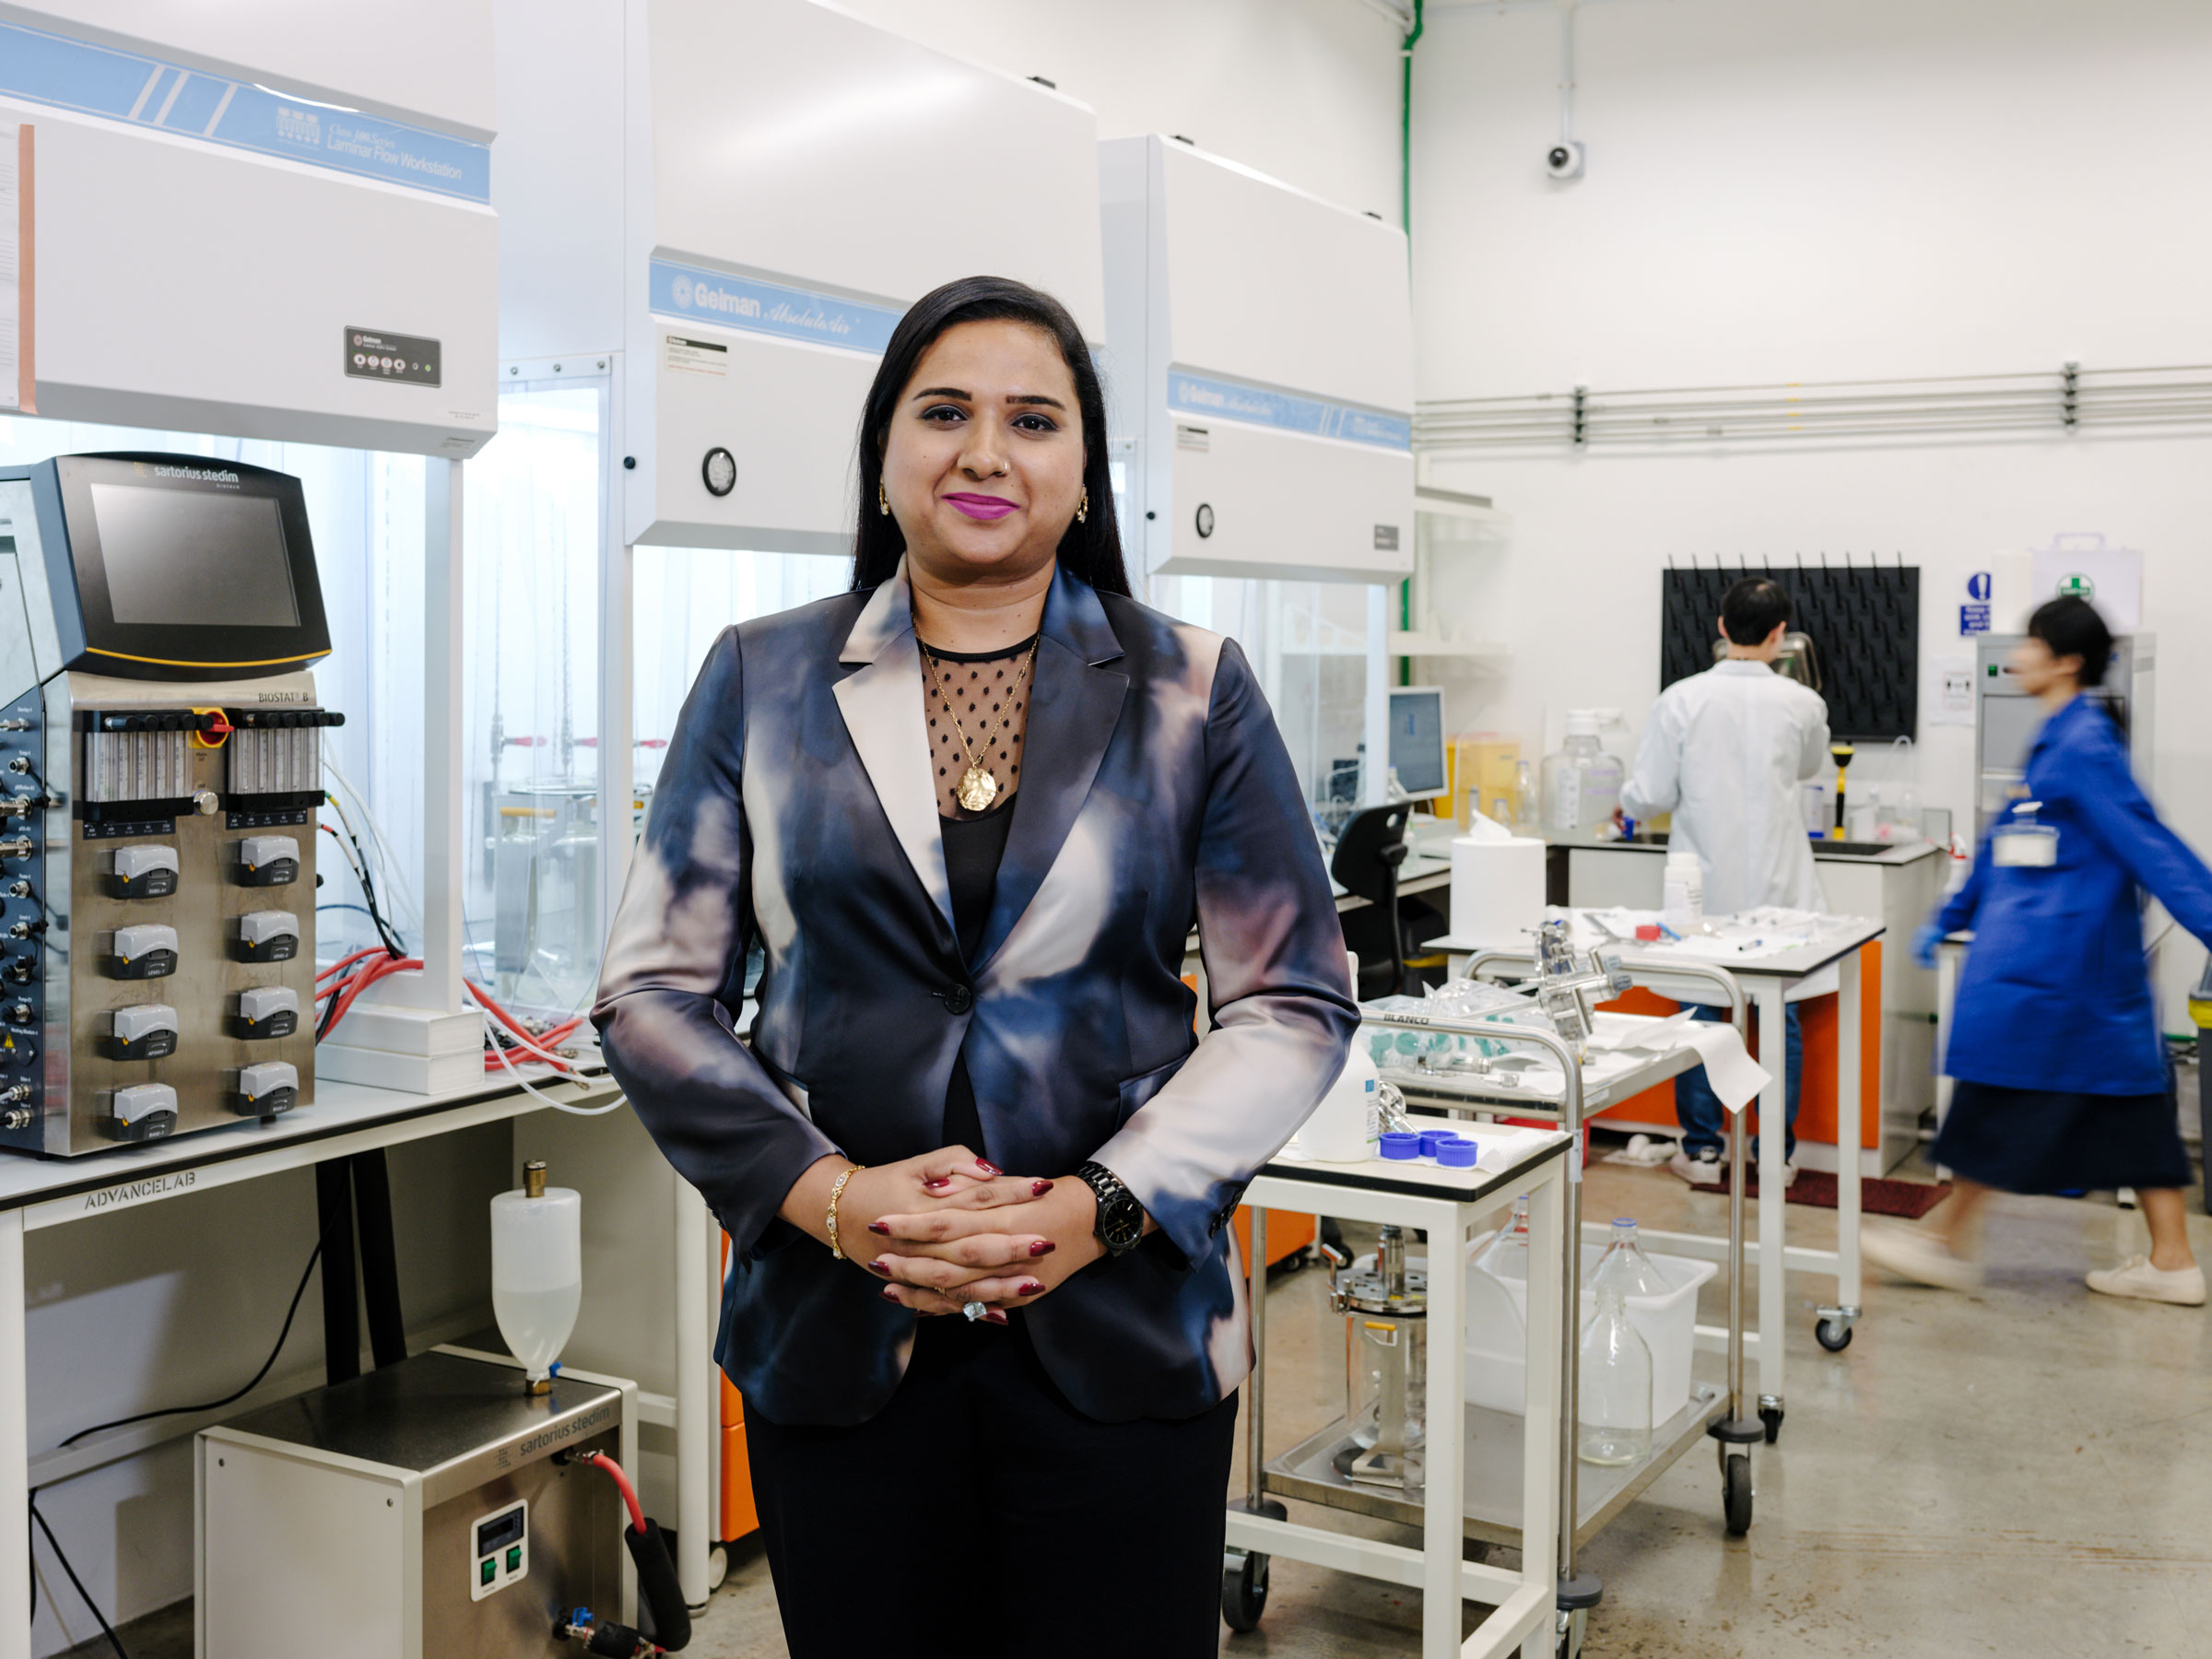 Grup CEO'su ve Shiok Meats'in Kurucu Ortağı Sandhya Sriram, 11 Kasım'da burada Ar-Ge laboratuvarında görülüyor. (TIME için Mindy Tan)